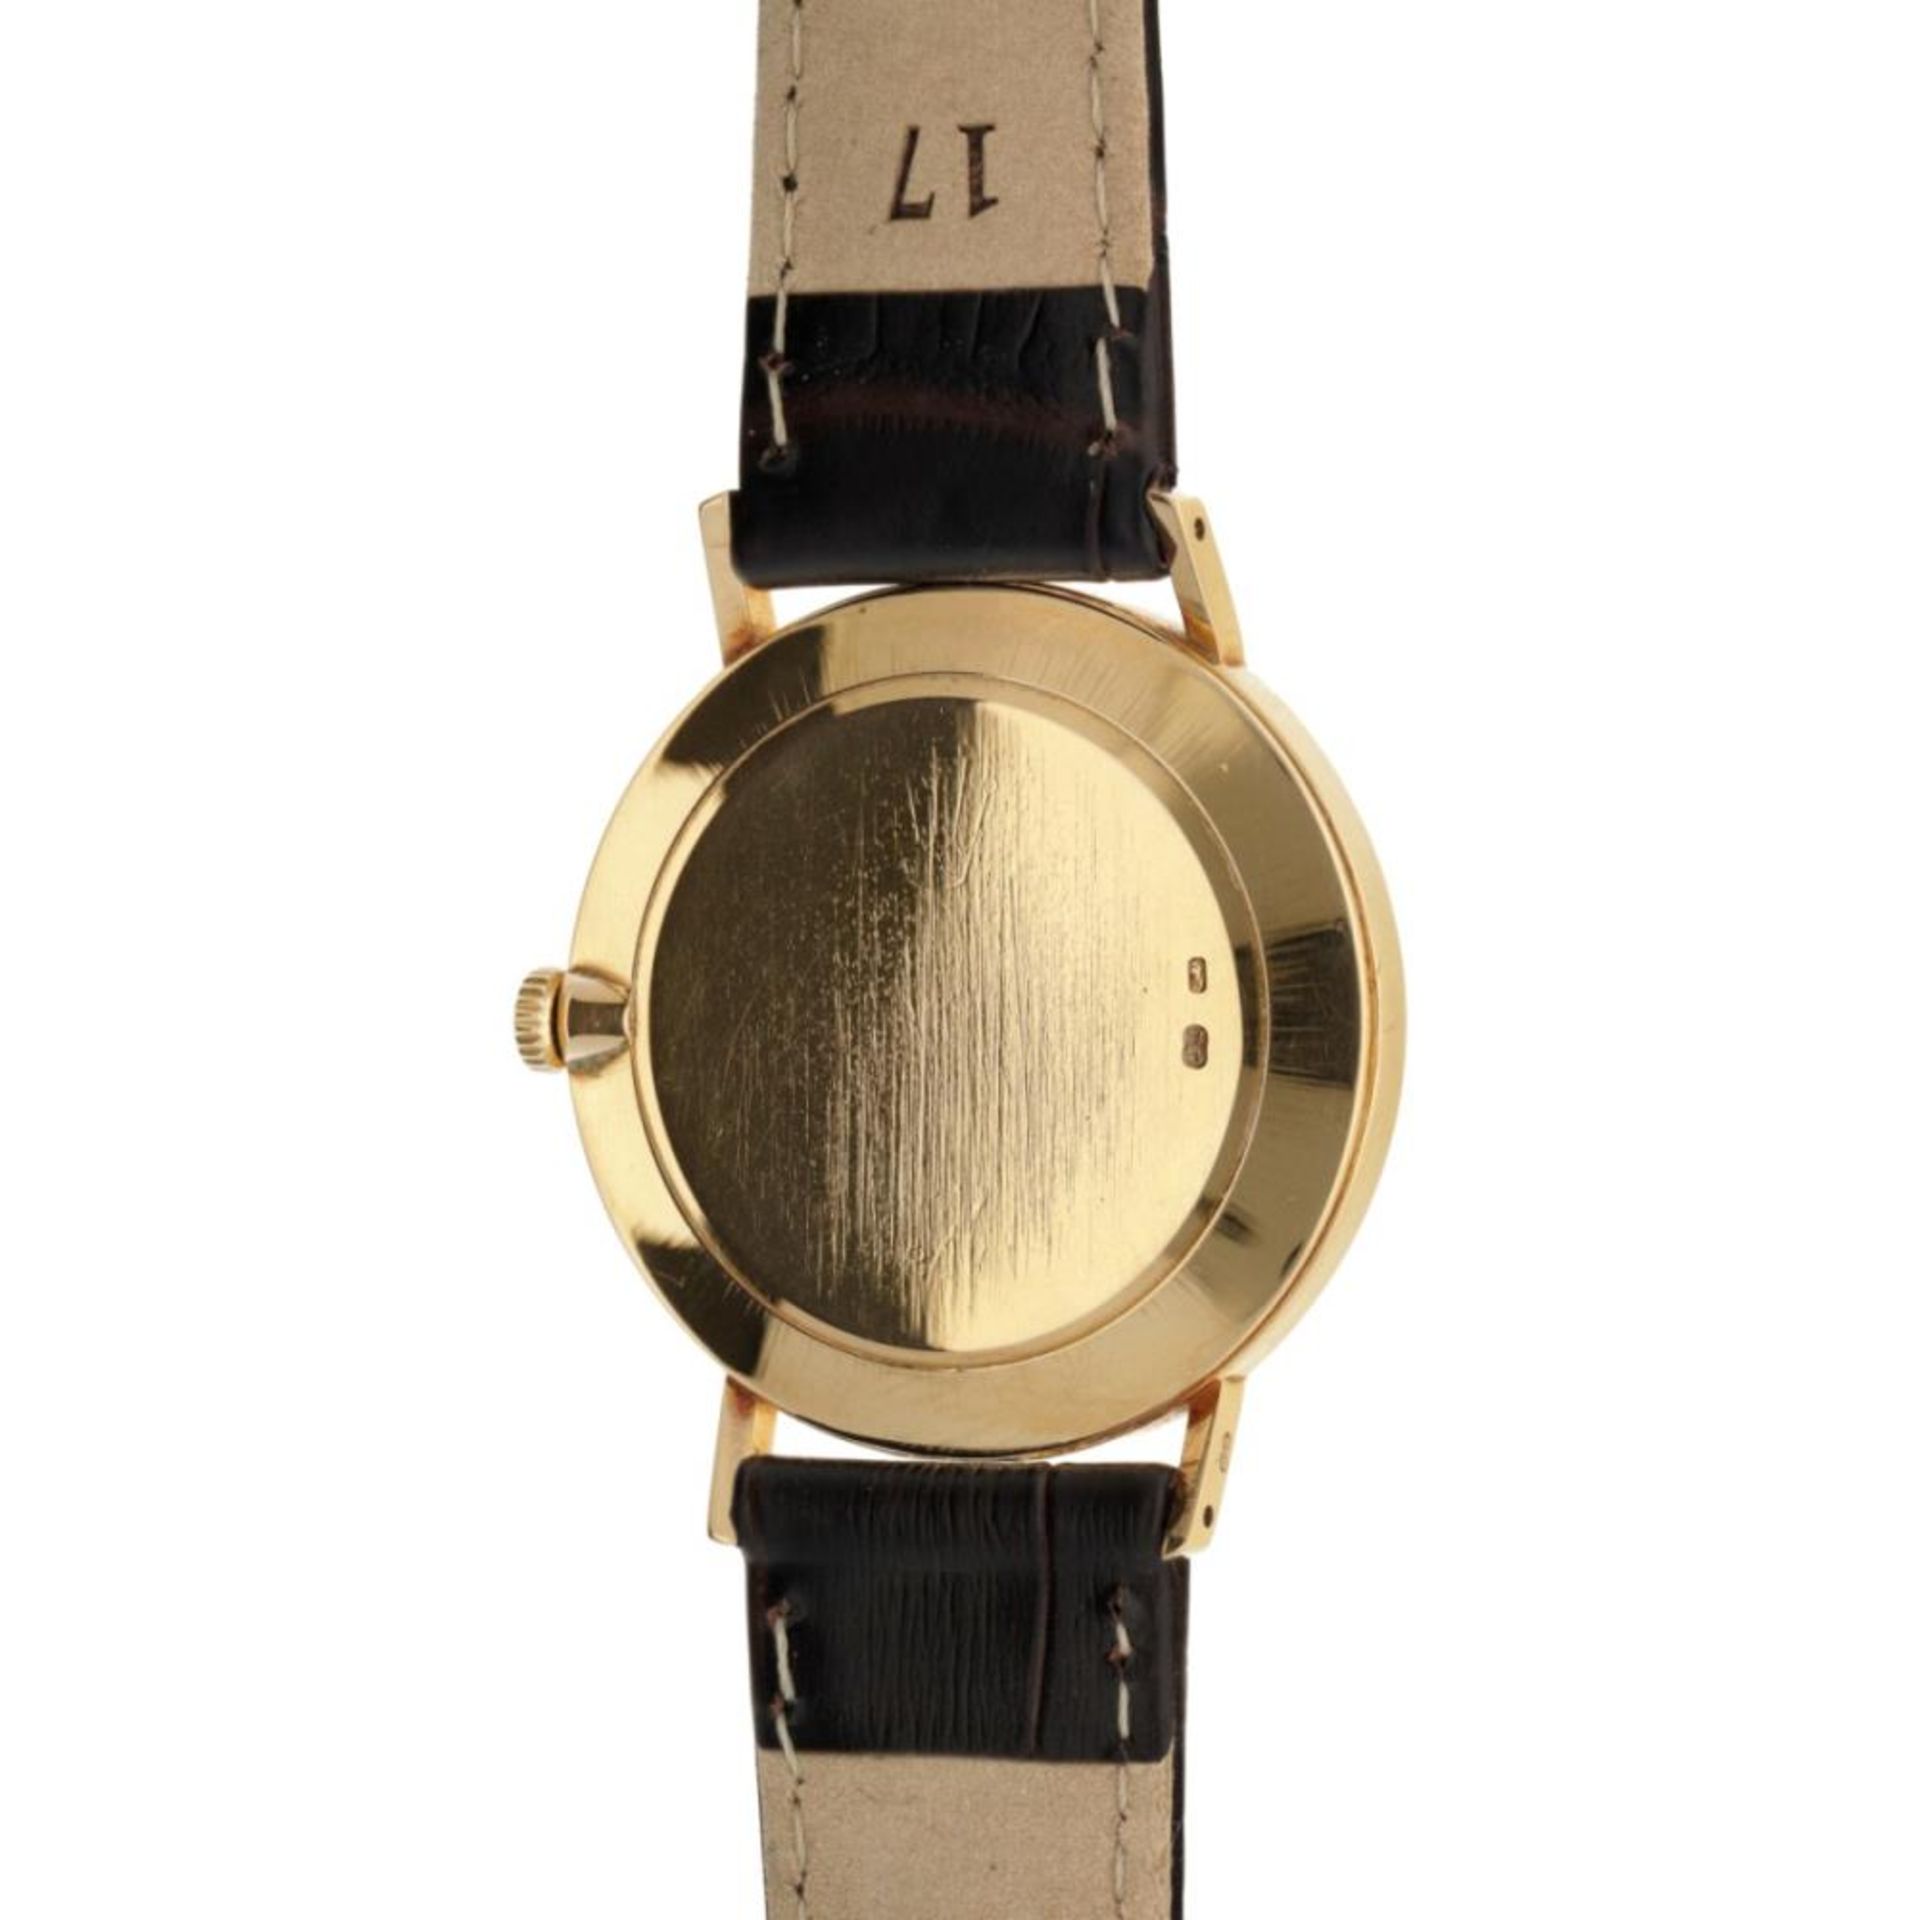 Rolex Cellini 4112 - Men's watch - approx. 1995. - Bild 3 aus 6